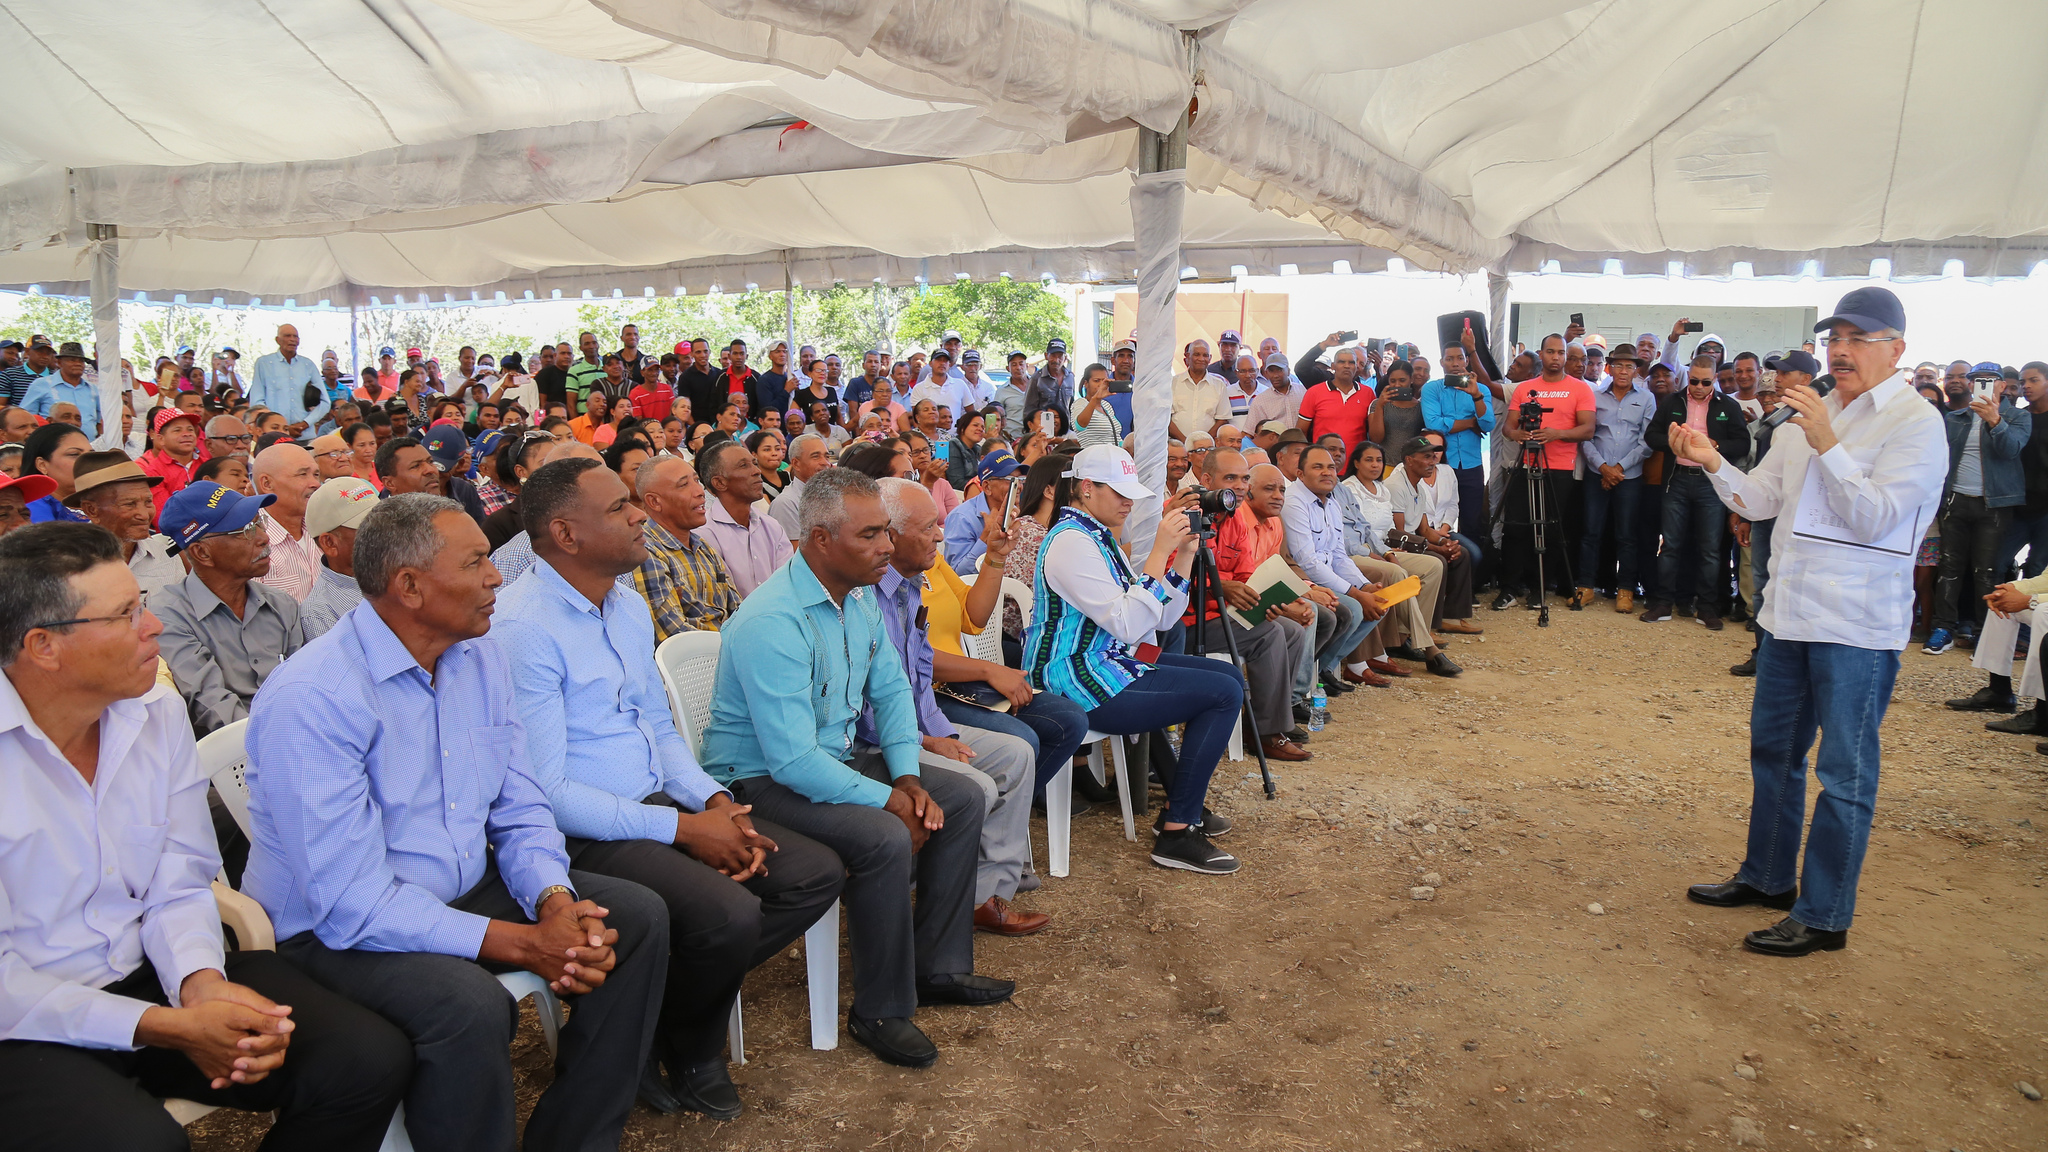 REPÚBLICA DOMINICANA: Las Matas de Farfán: ganaderos y productores de aguacate reciben apoyo para aumentar ingresos e implementar buenas prácticas agropecuarias